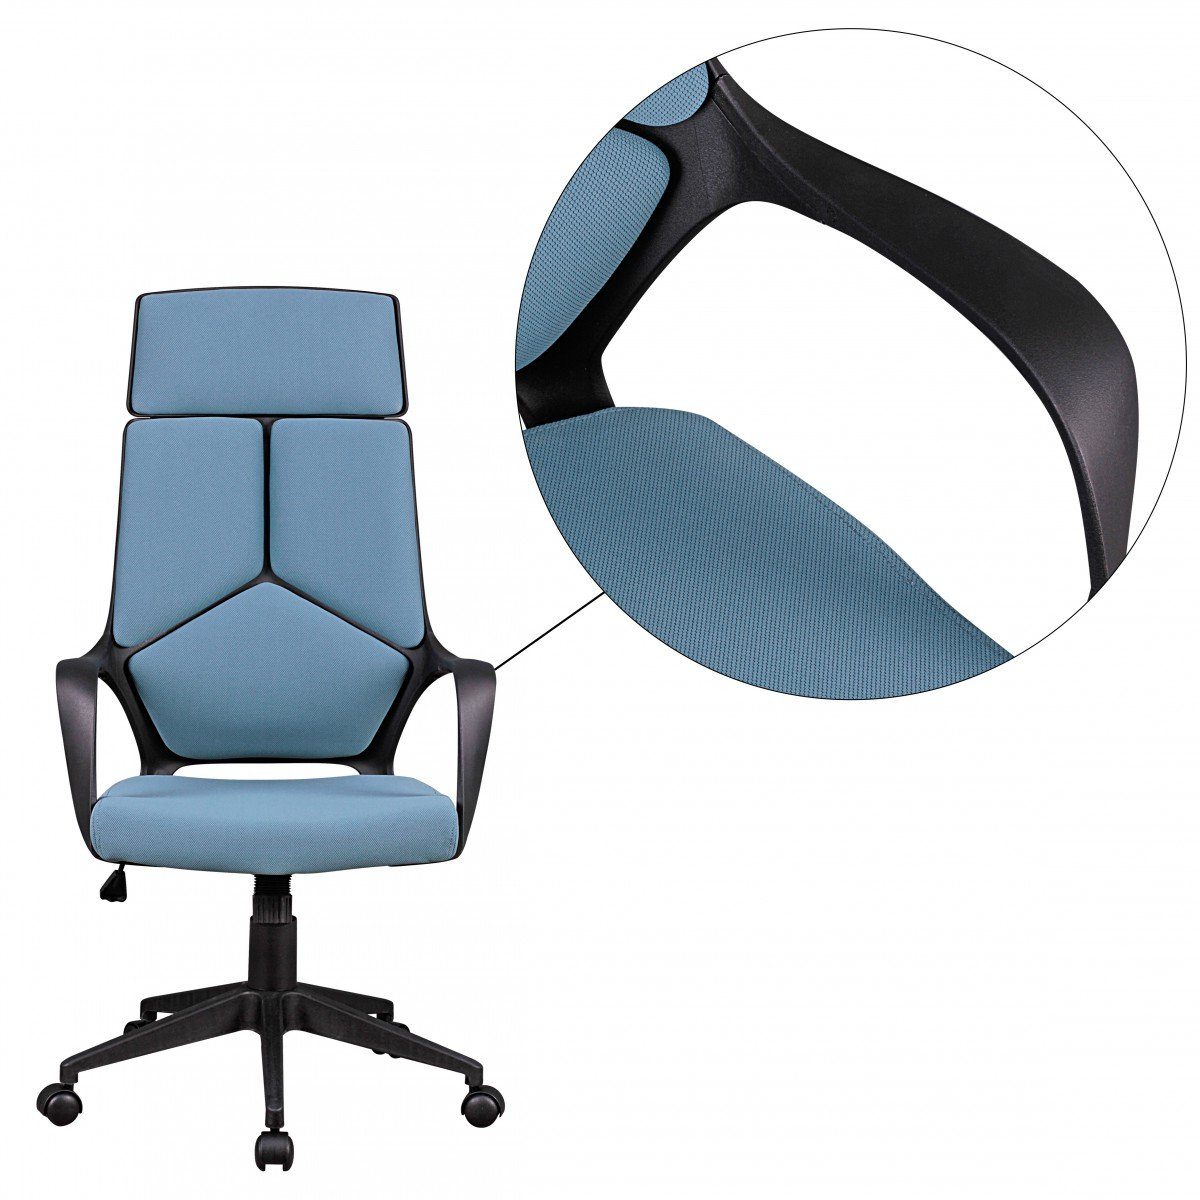 Bürostuhl Schreibtischstuhl Chefsessel Schreibtischstuhl Design Bürostuhl Armlehne Stoffbezug mit & Wippmechanik Drehstuhl möbelando Bürostuhl Blau Stoffbezug Blau Design,